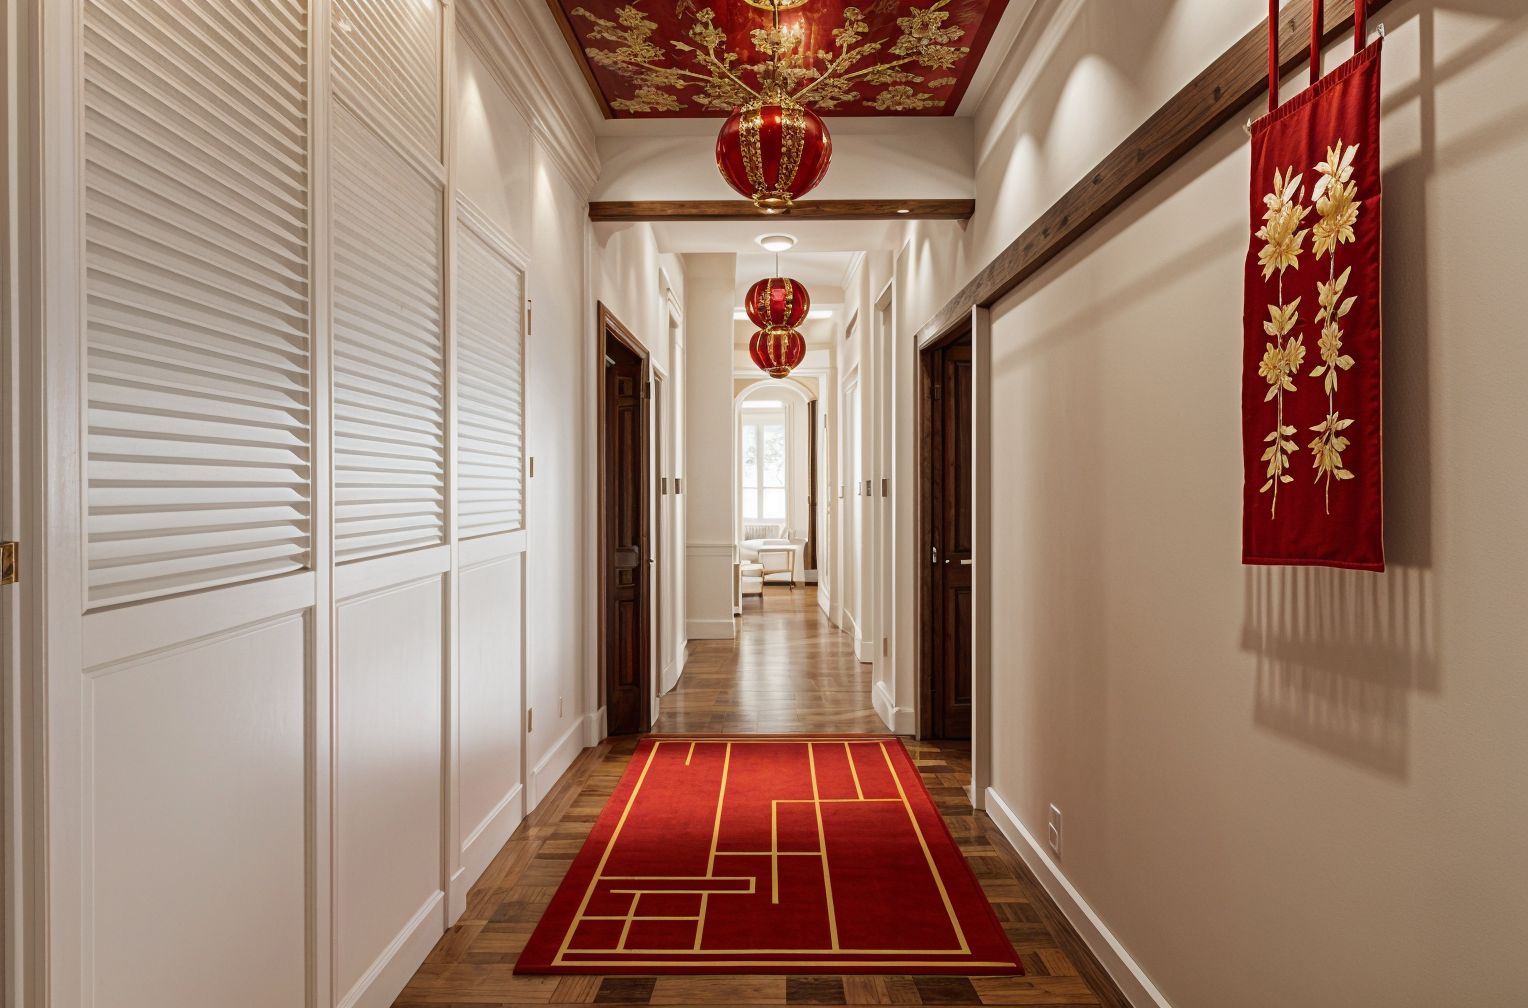 Chinese New Year Hallway